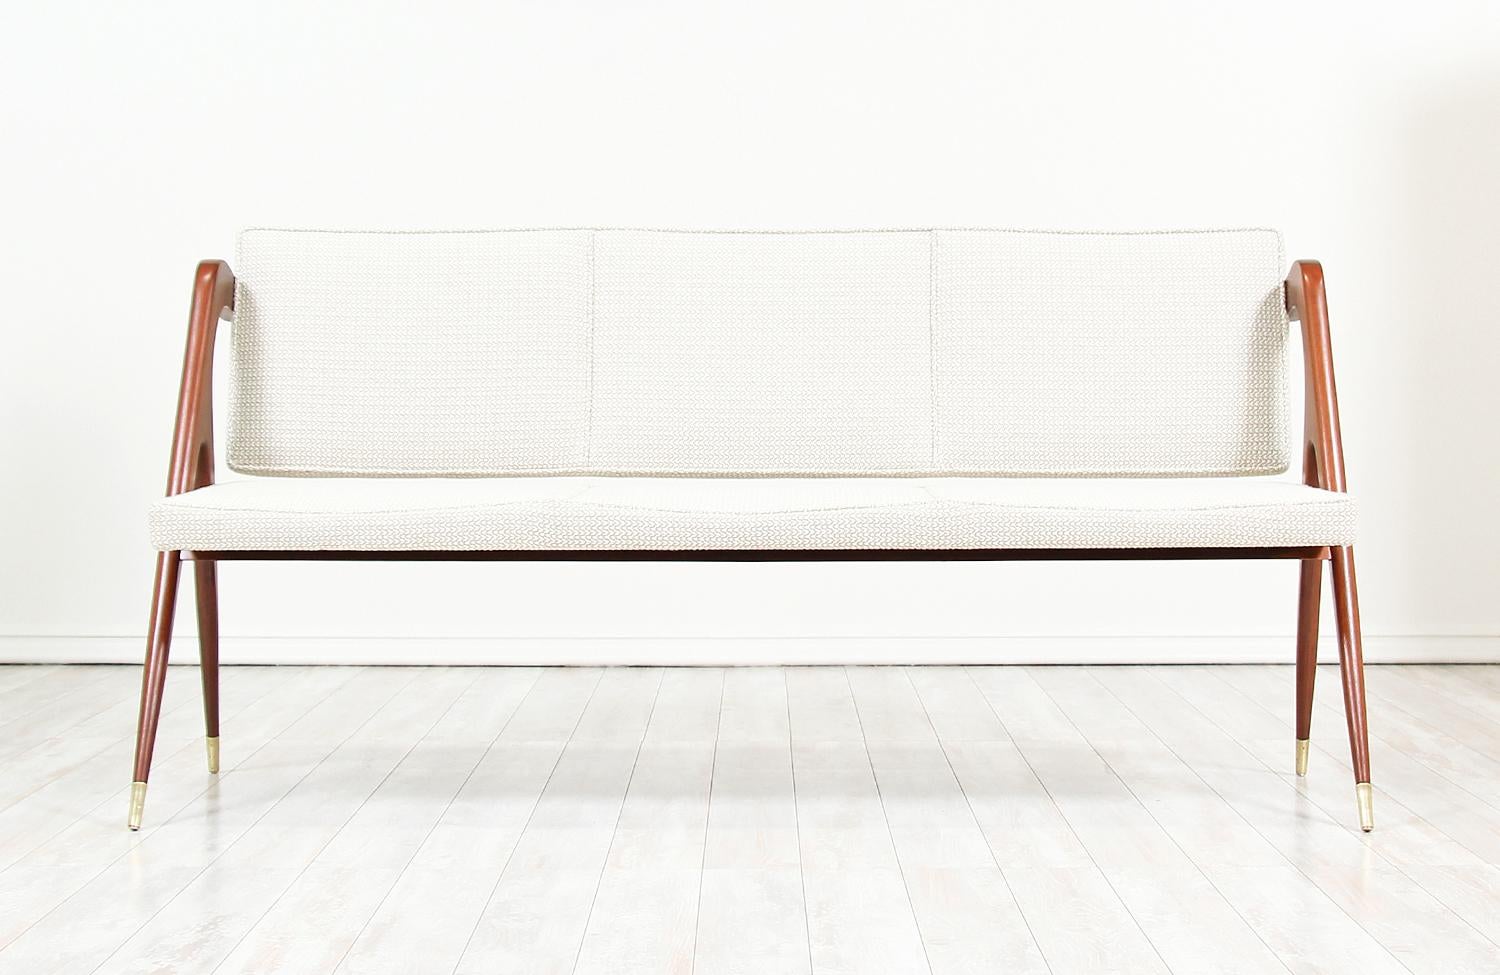 Seltenes Sofa:: entworfen von Eugenio Escudero für D'Escudero:: S.A. in Mexiko:: ca. 1950er Jahre. Dieses atemberaubende Sofa zeichnet sich durch einen stabilen Rahmen aus walnussfarben gebeiztem Mahagoniholz mit skulpturalen:: klaren Linien aus.